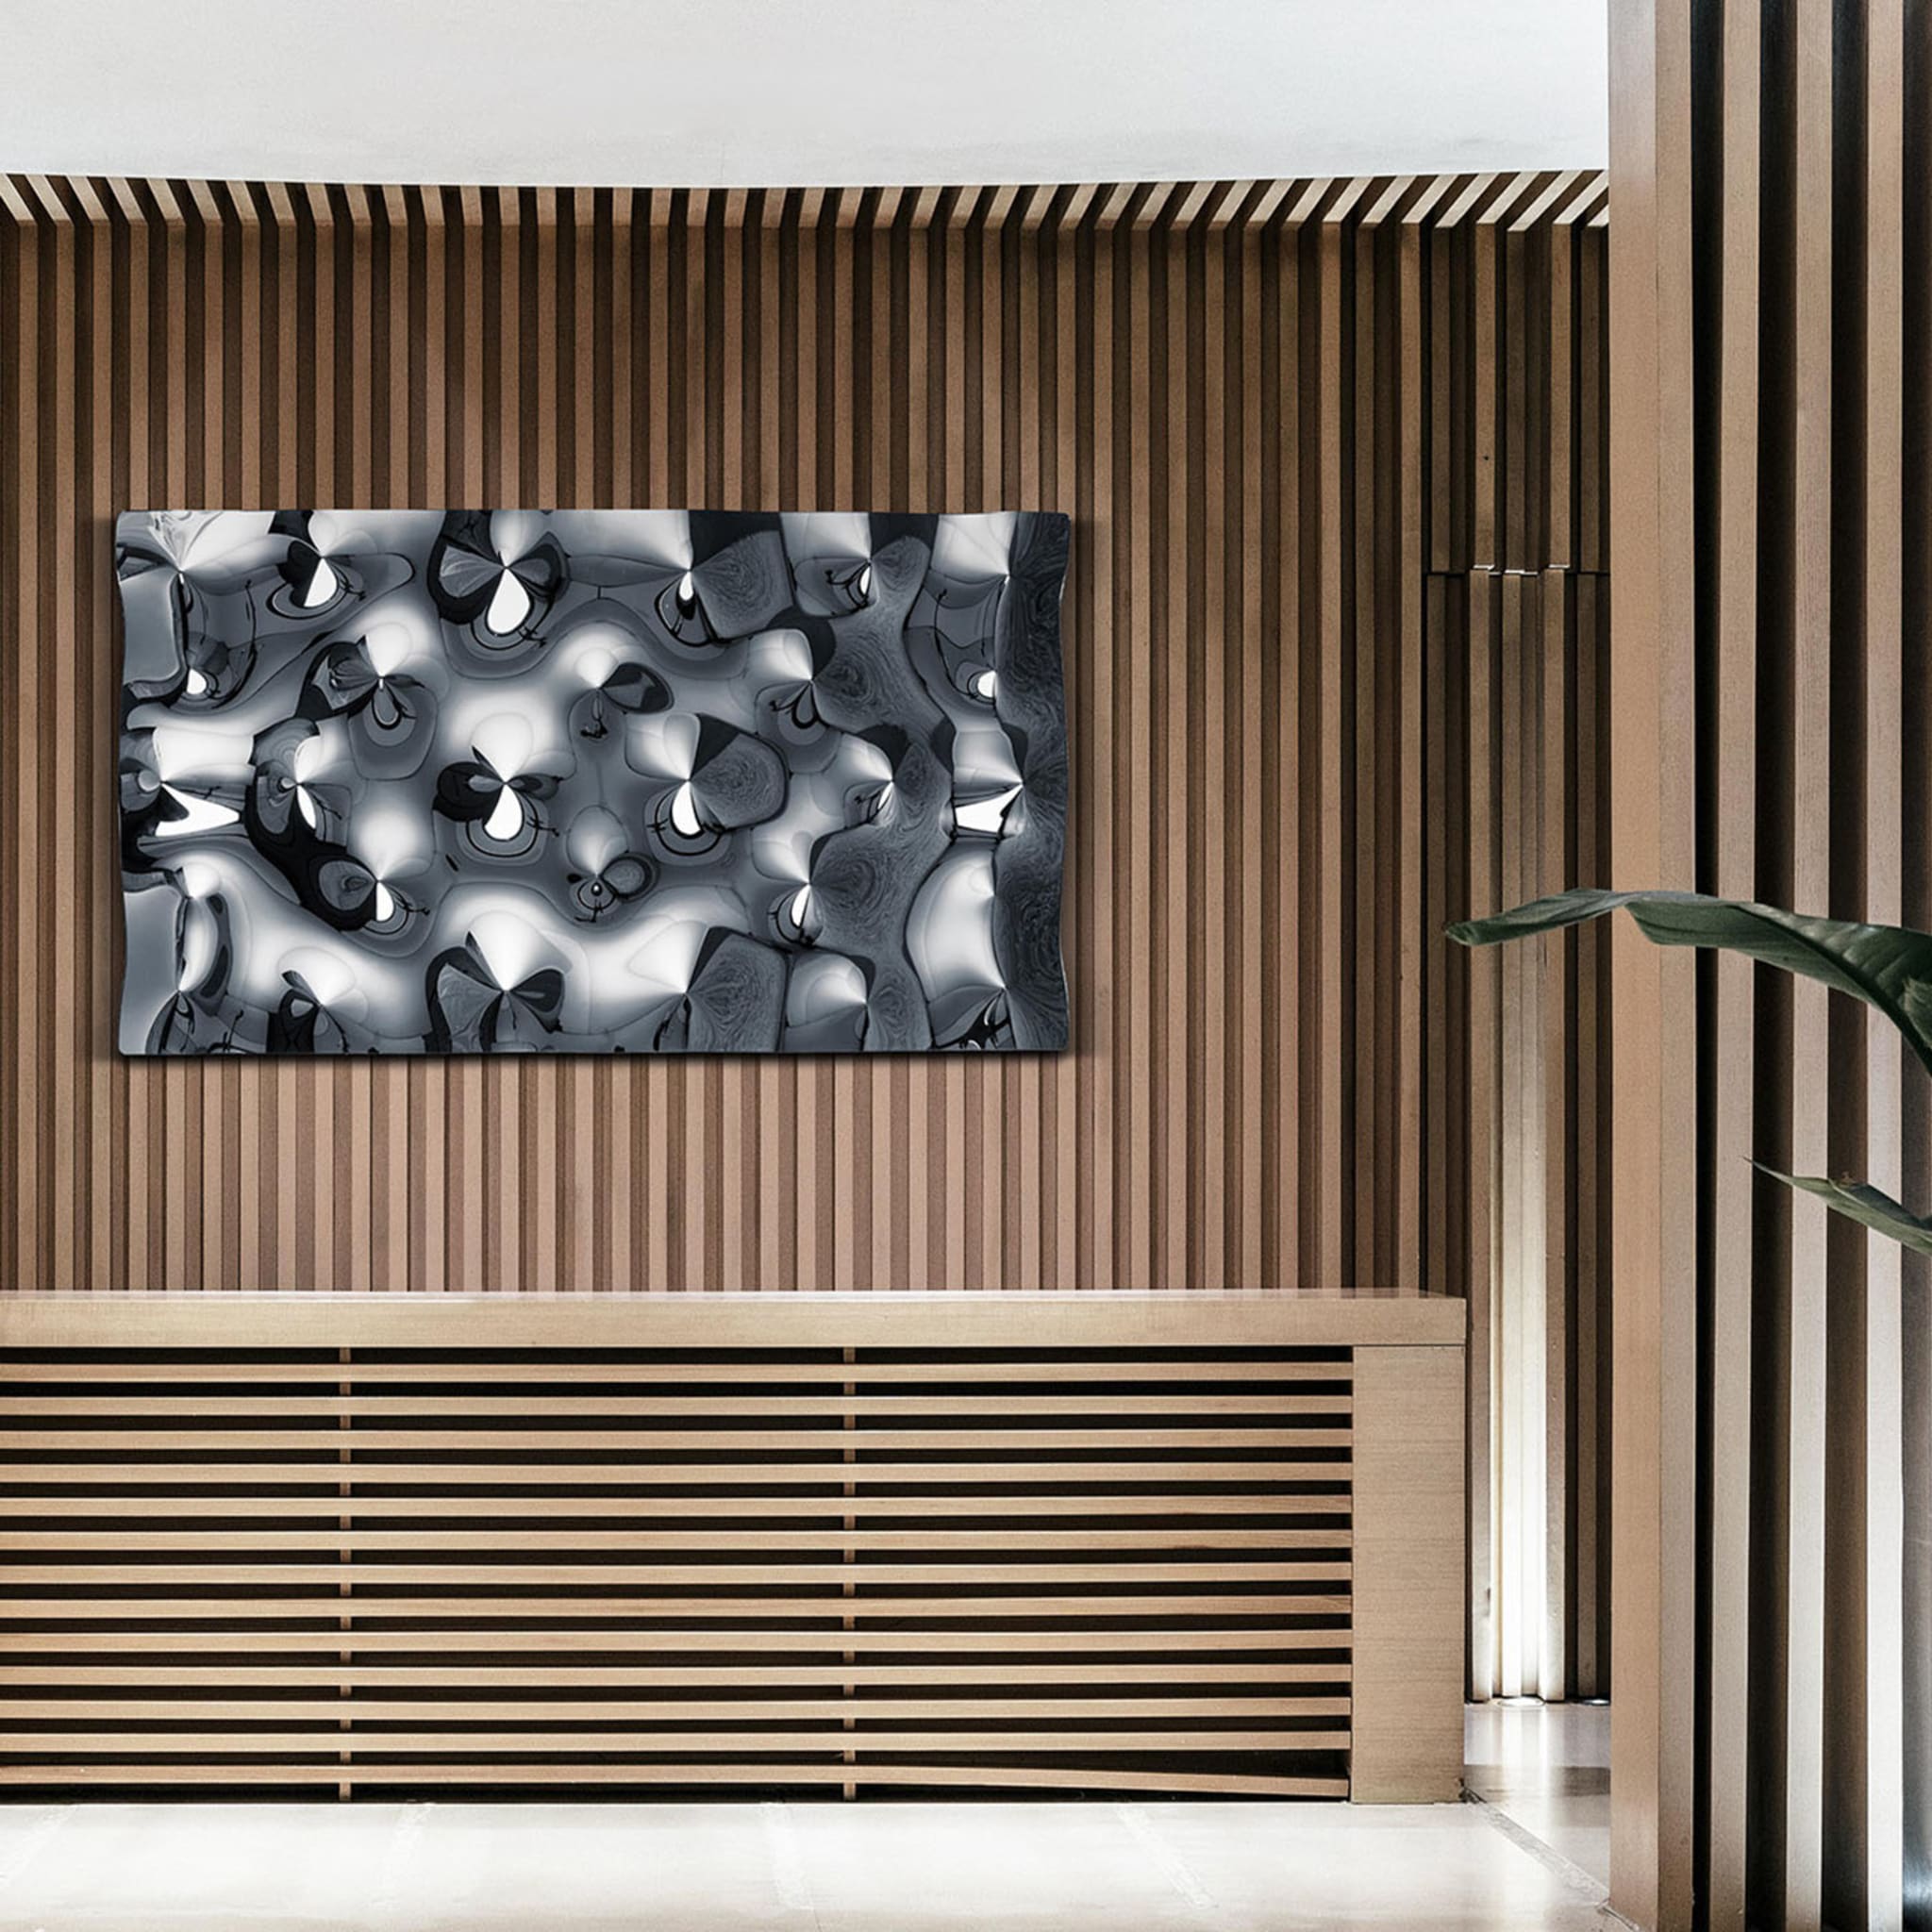 Rialto Black Decorative Wall Panel - Alternative view 1